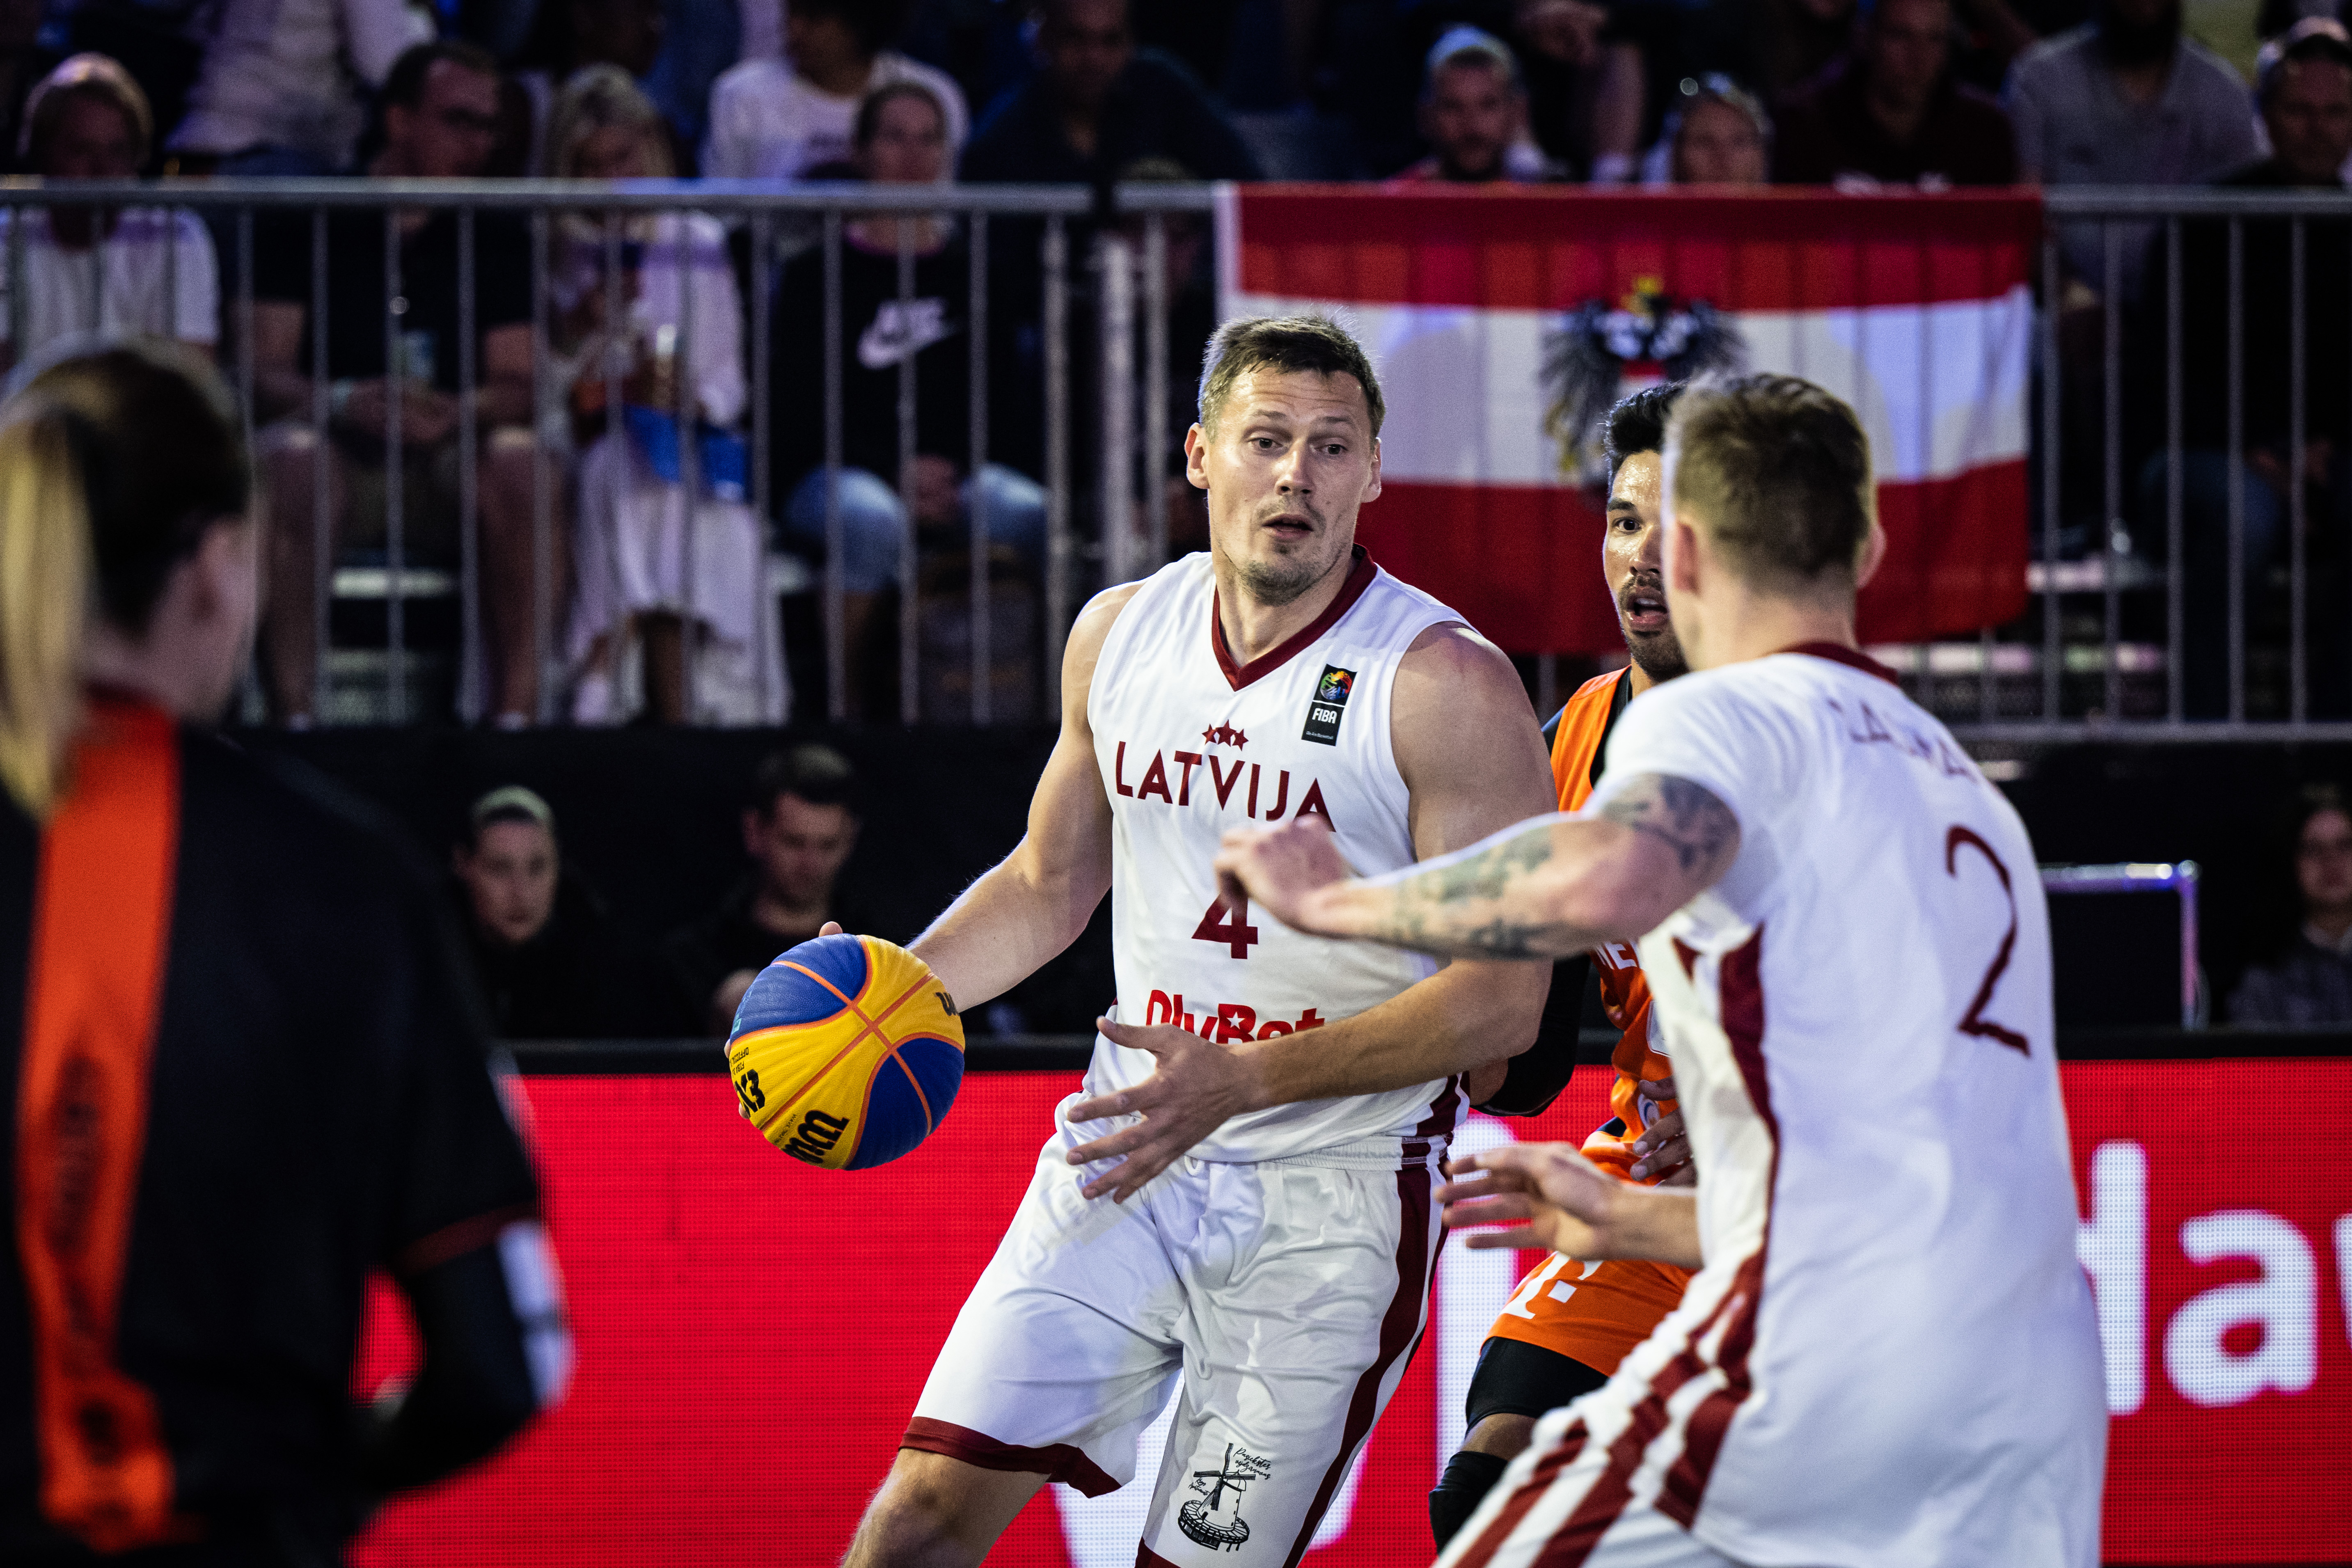 Poland v Latvia, Full Basketball Game